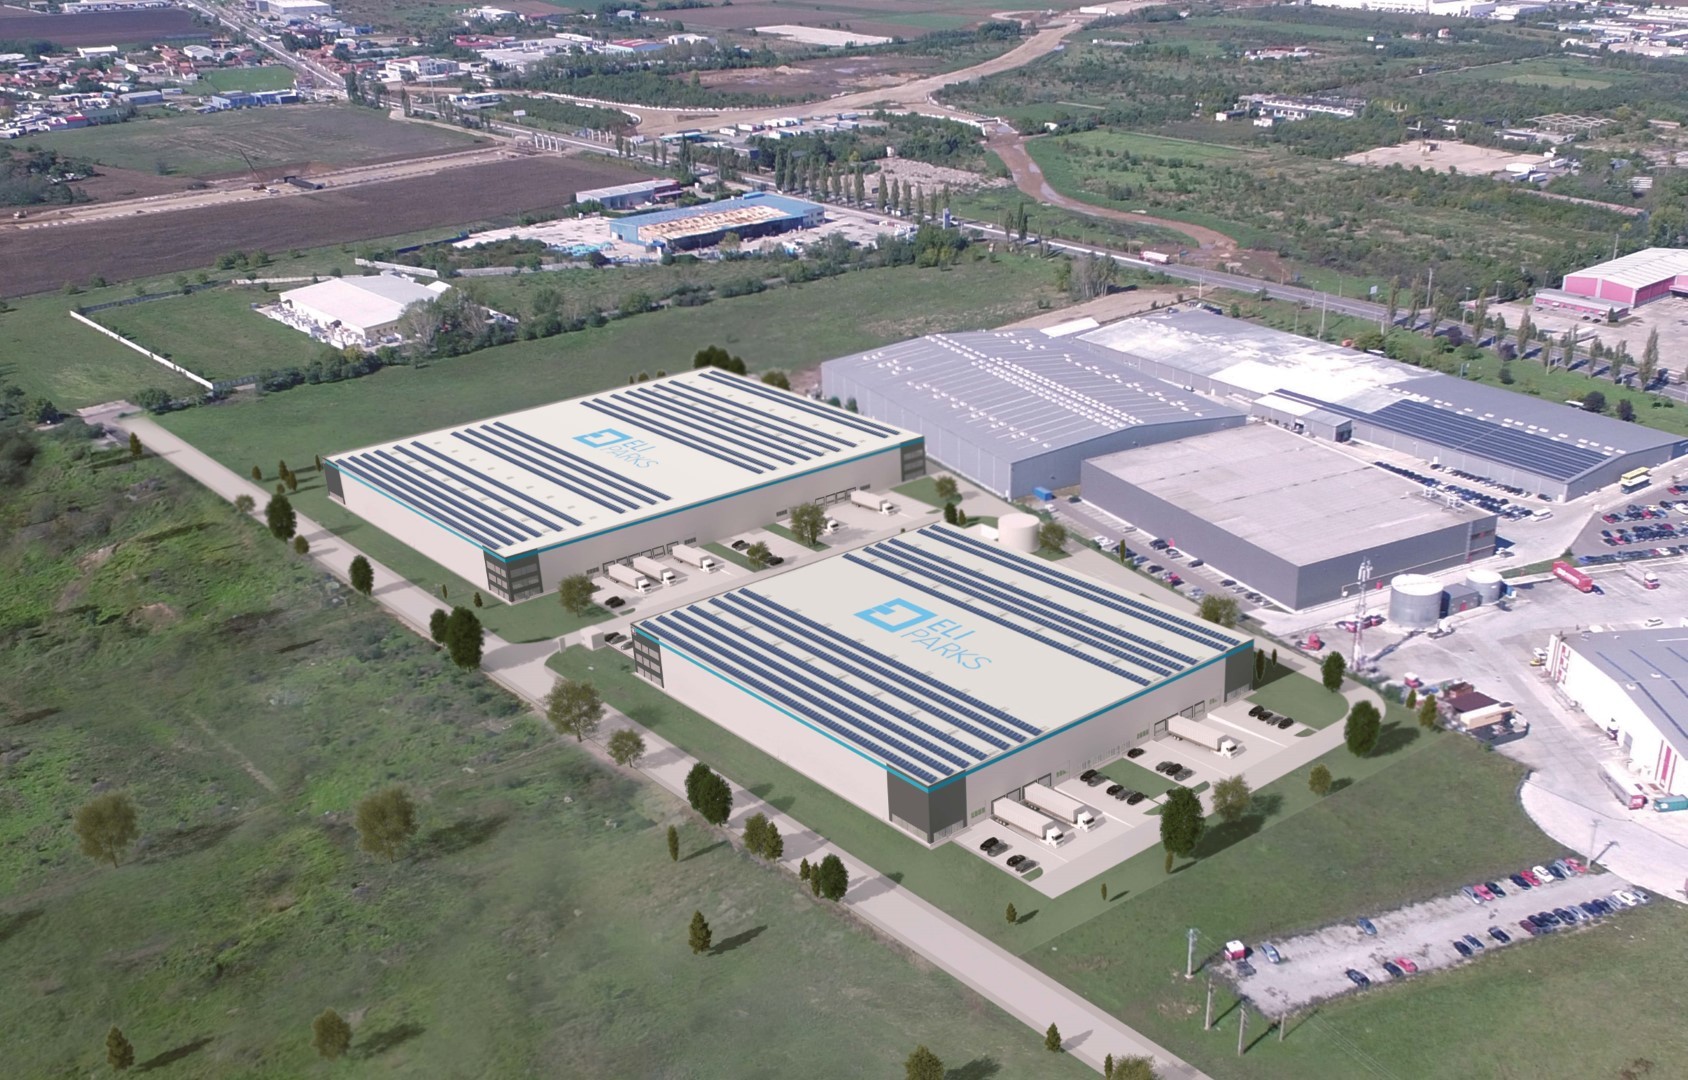 Un nou parc logistic şi industrial va fi construit la Oradea, în suprafaţă de 30.000 mp şi o investiţie de 22 milioane de euro